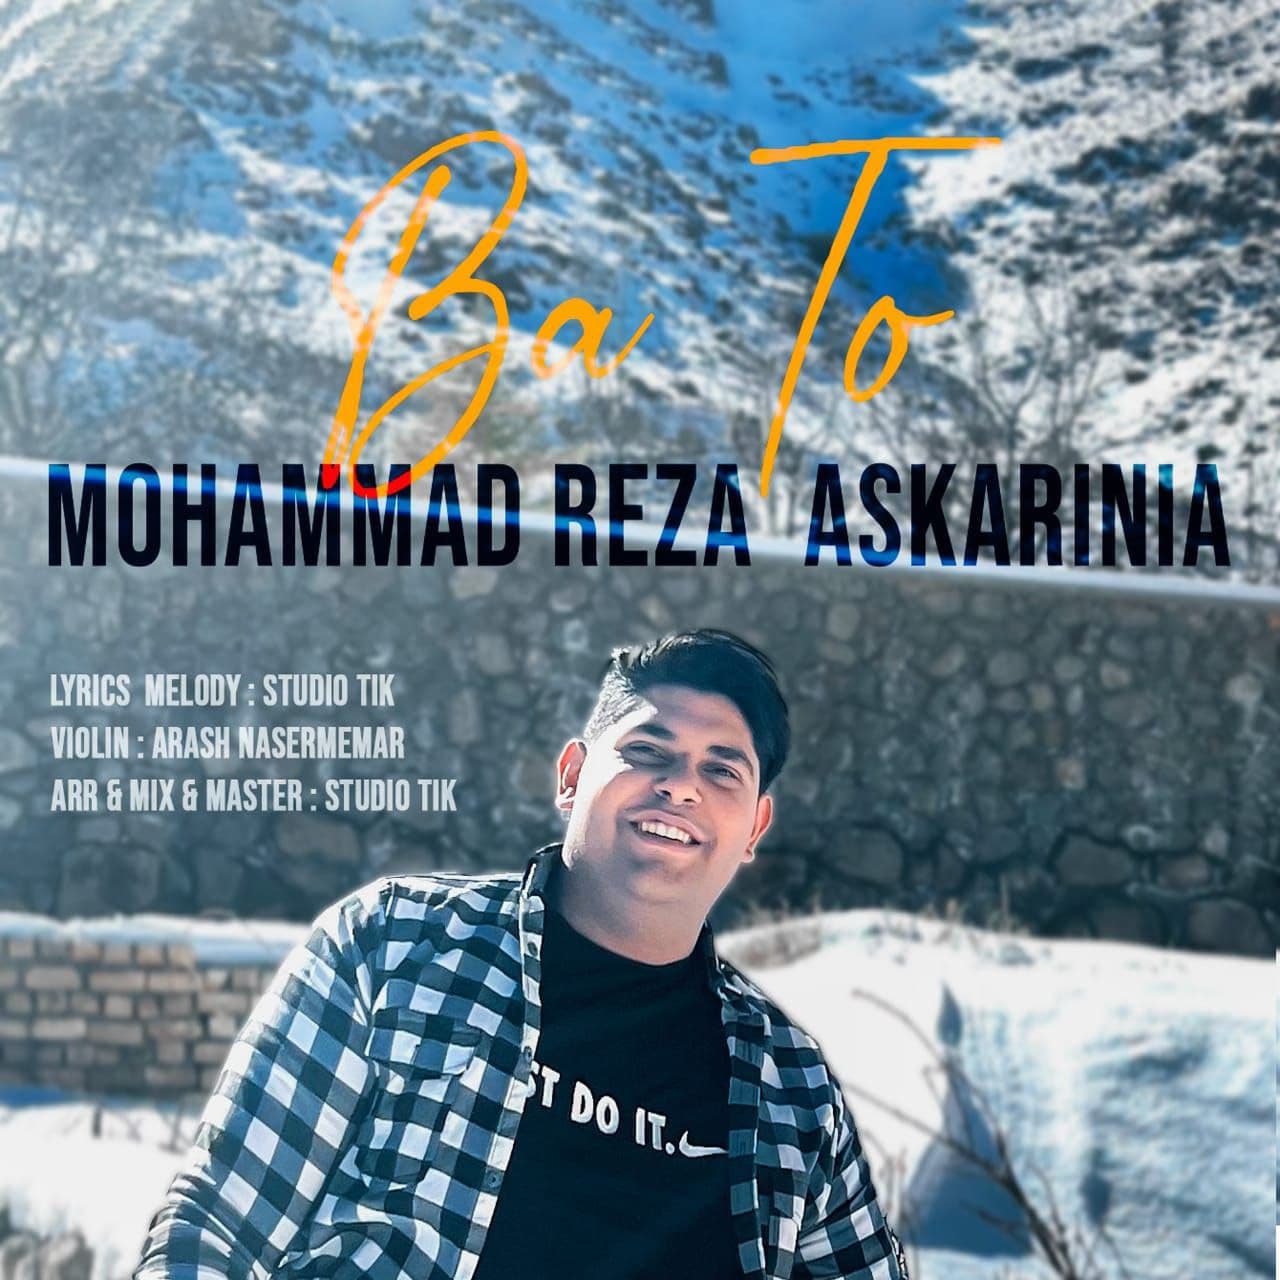 Mohammad Reza Askari Nia – Ba To